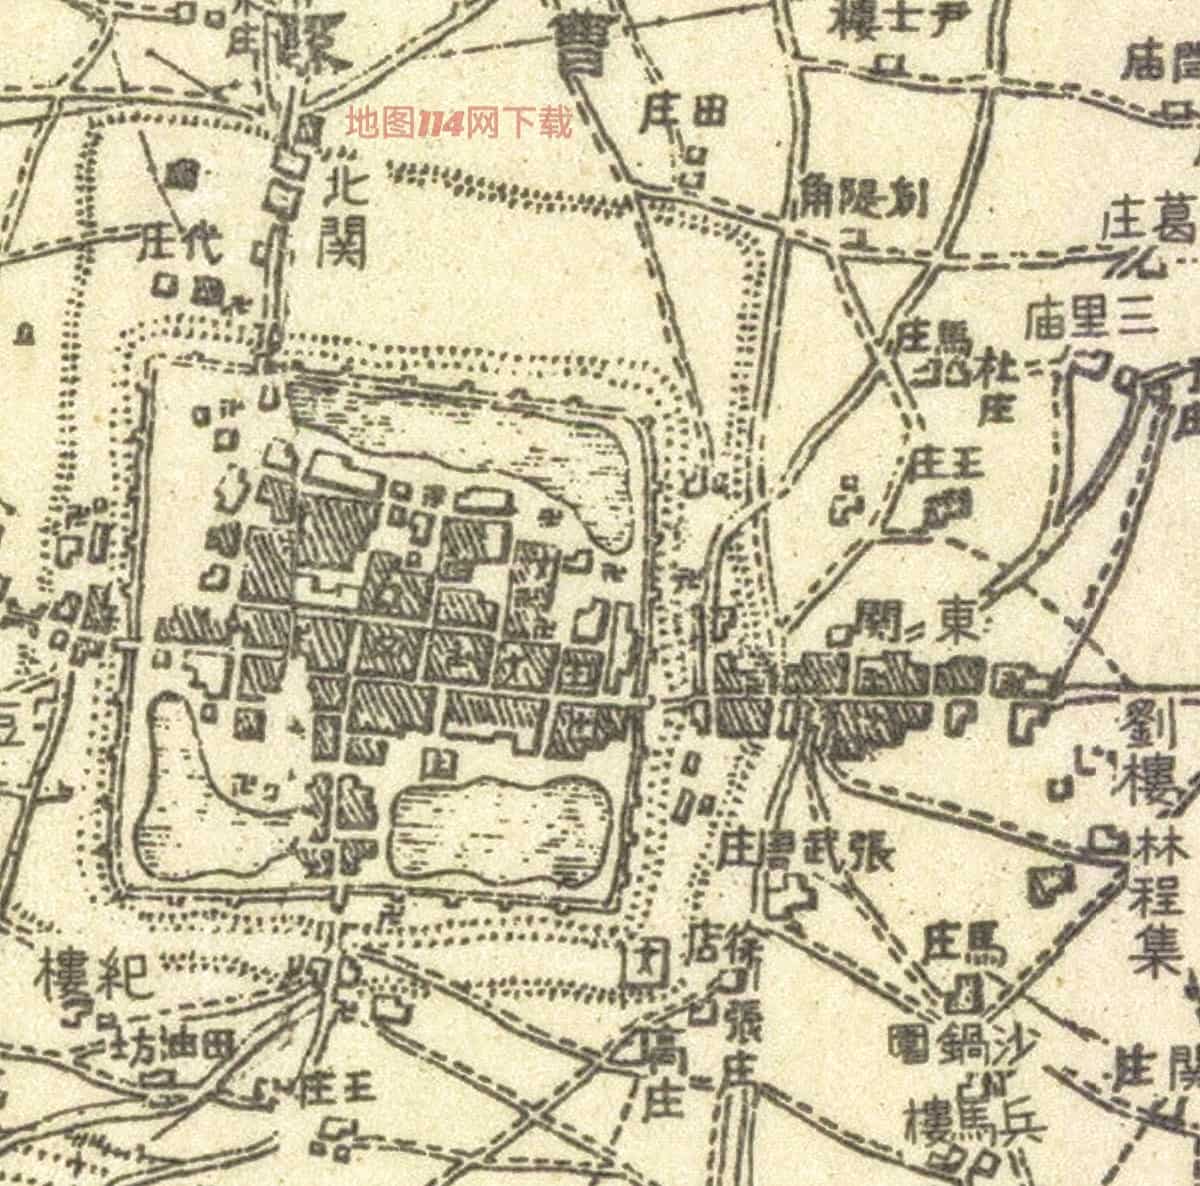 1938年曹县周边细节图.jpg